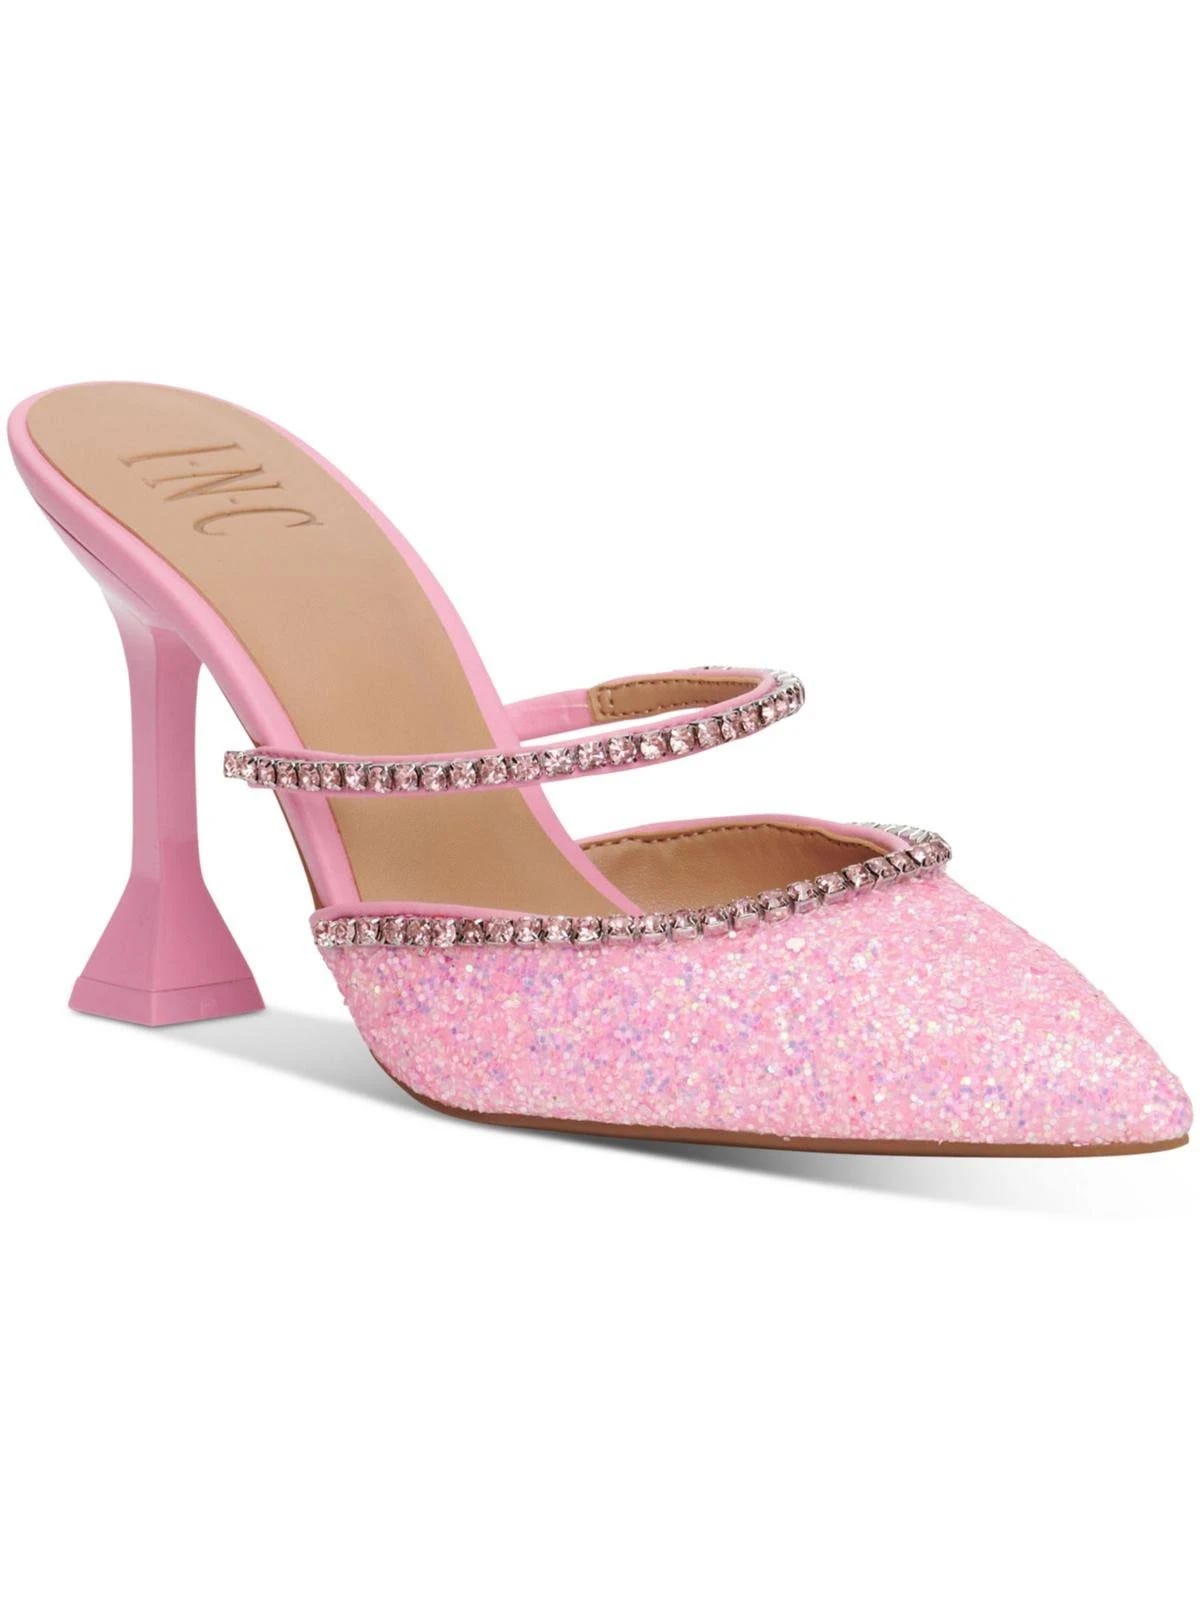 Glitter Women's Block Heels in Striking Pink | Image